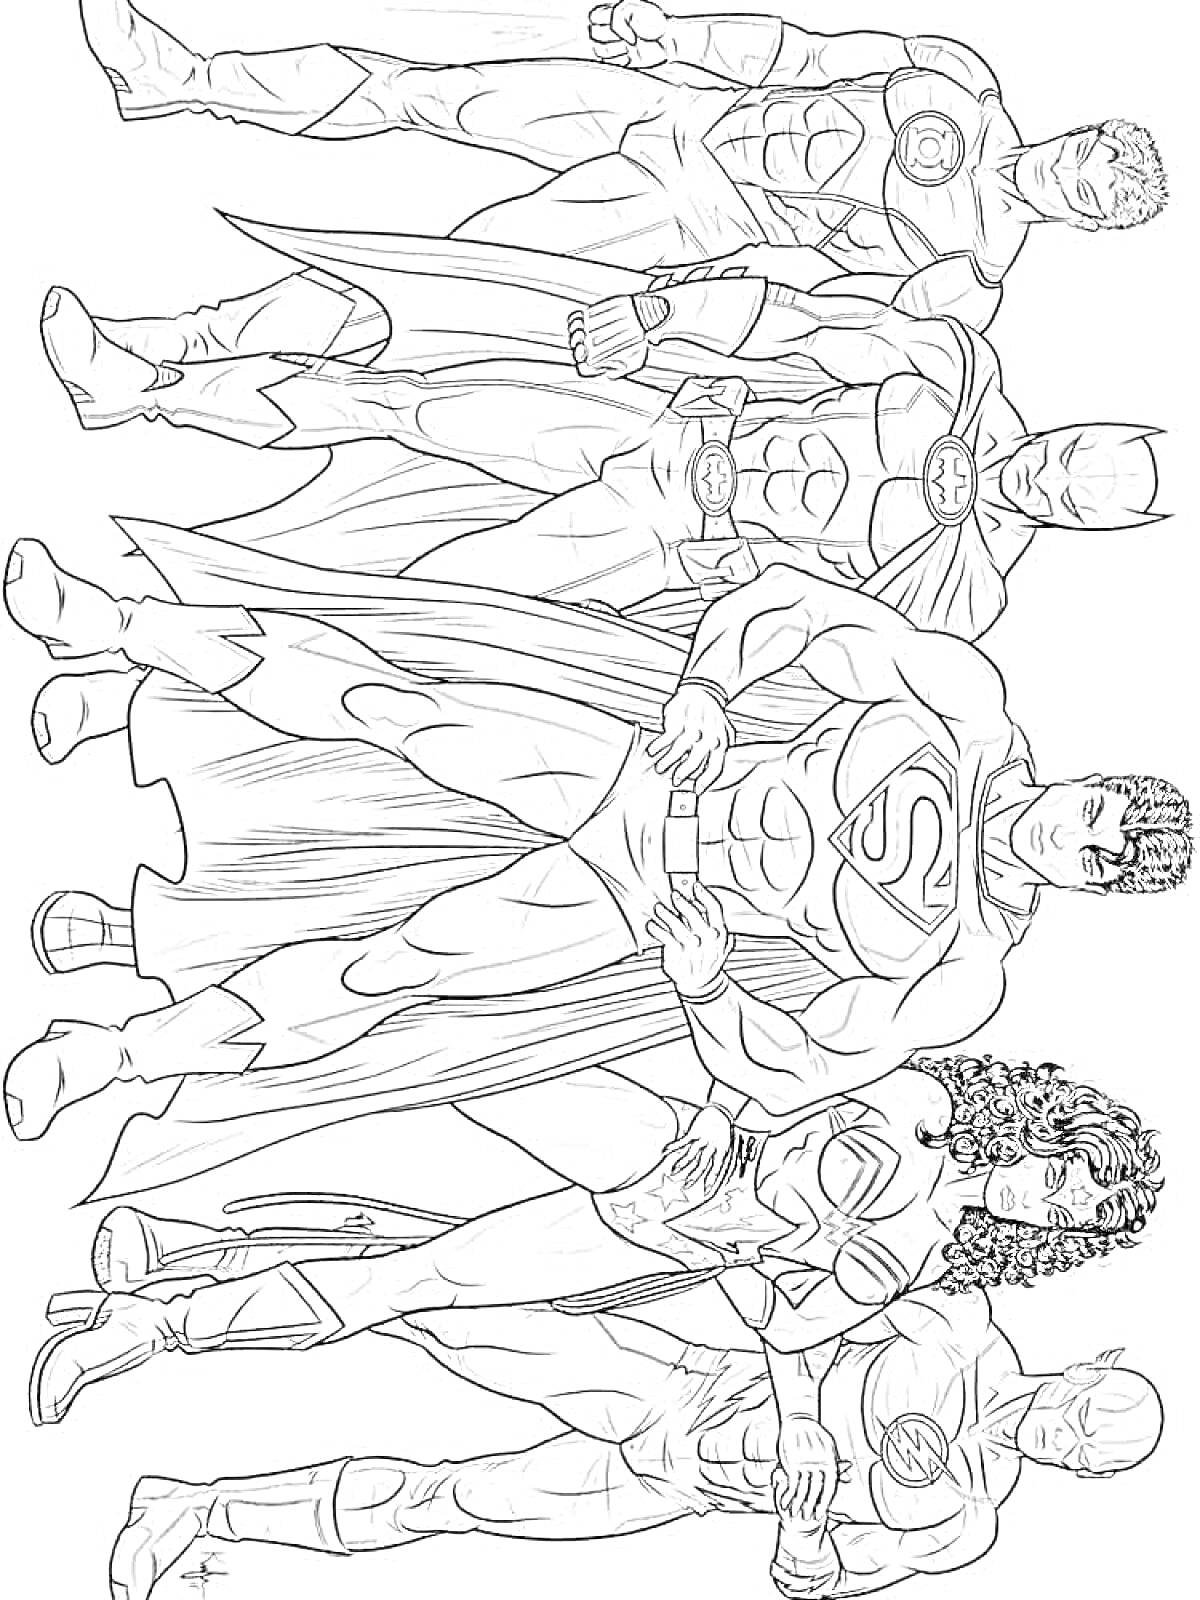 Раскраска Лига Справедливости с пятью супергероями (Супермен, Бэтмен, Чудо-женщина, Зелёный Фонарь, Флэш)